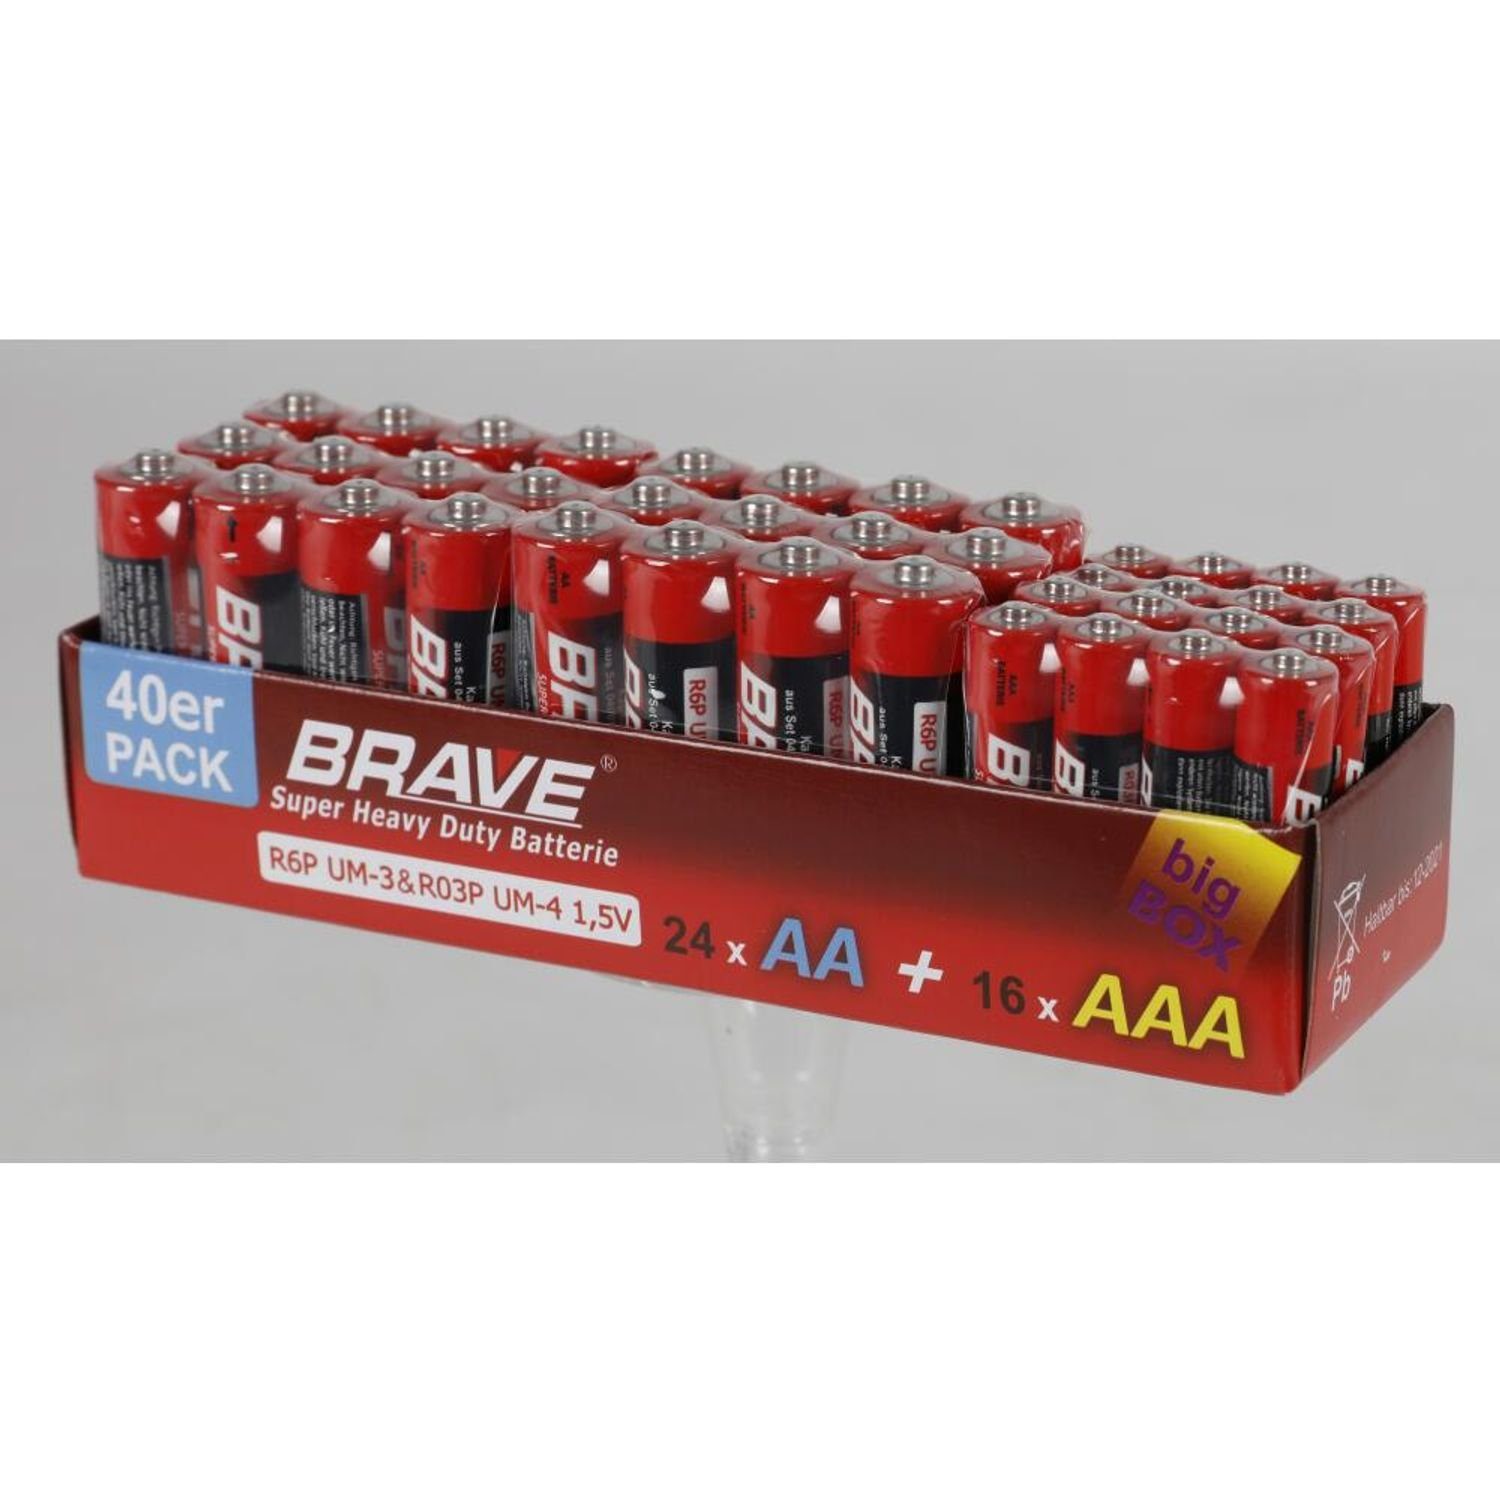 BURI 24x 40er-Pack Brave Batterien AA & AAA Großpackung 960 Stück Batterie, (960 St)